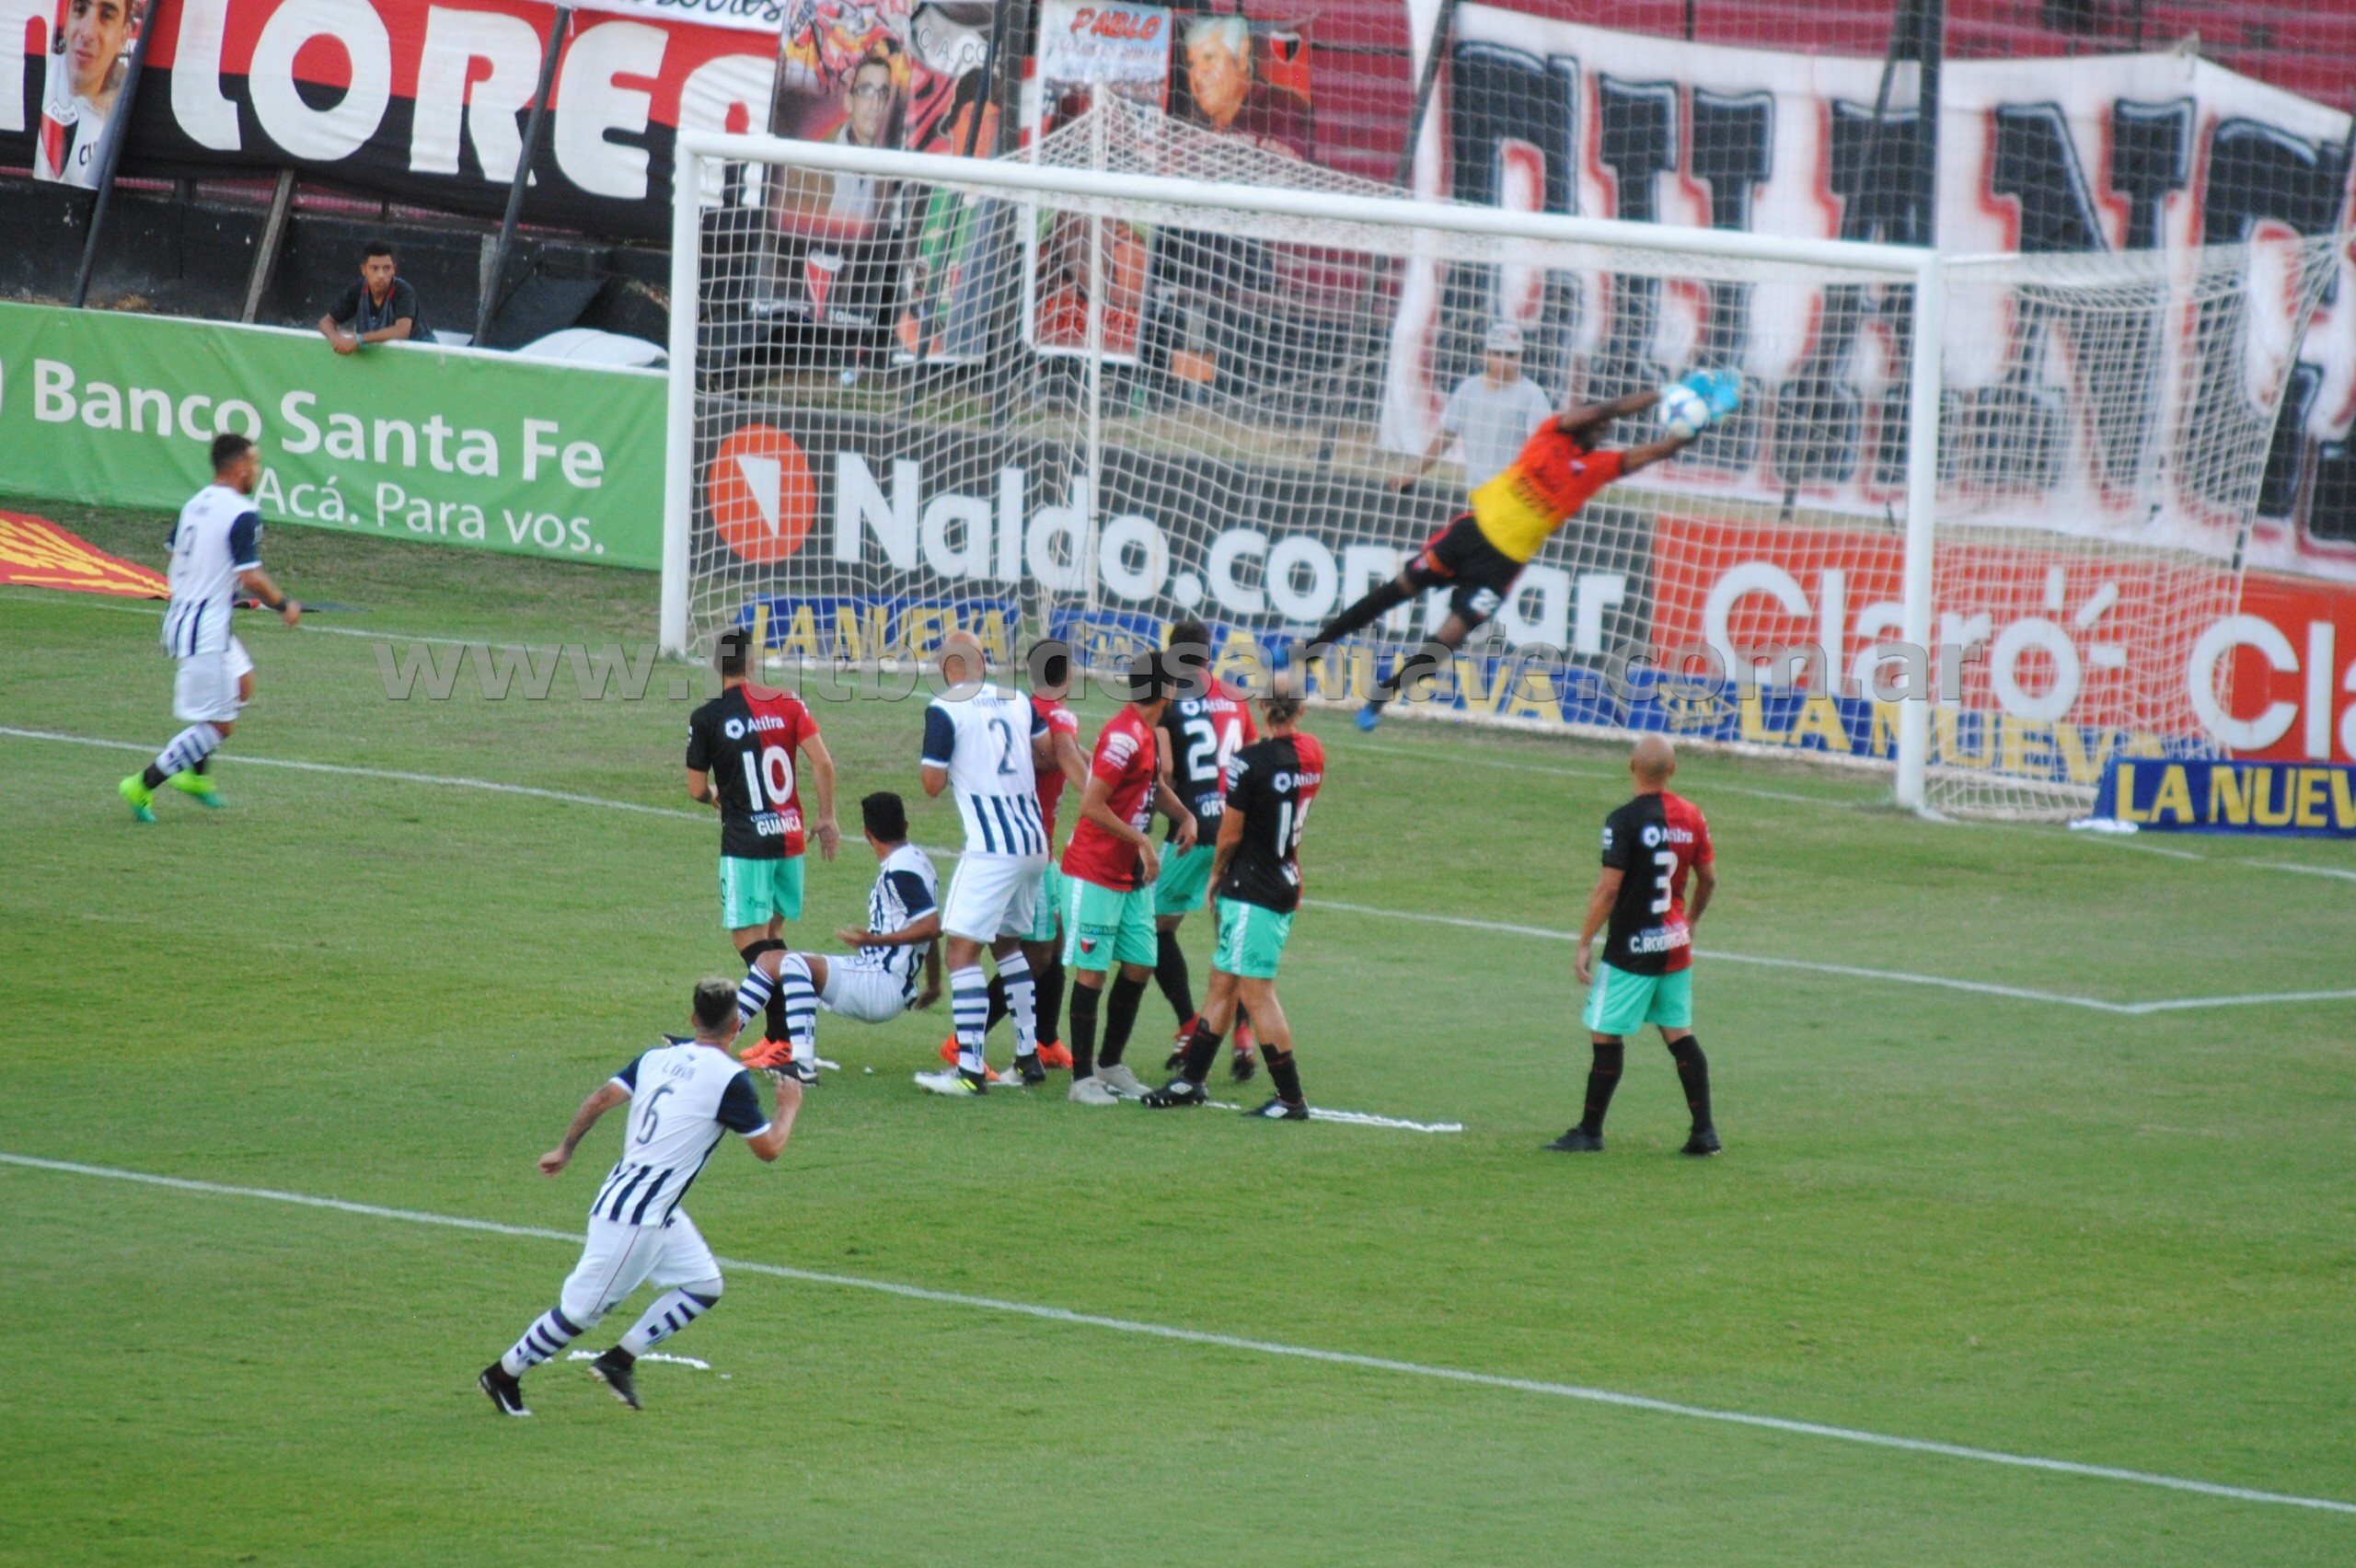 Colón 0 - Talleres 2 (Fecha 12 Super Liga)